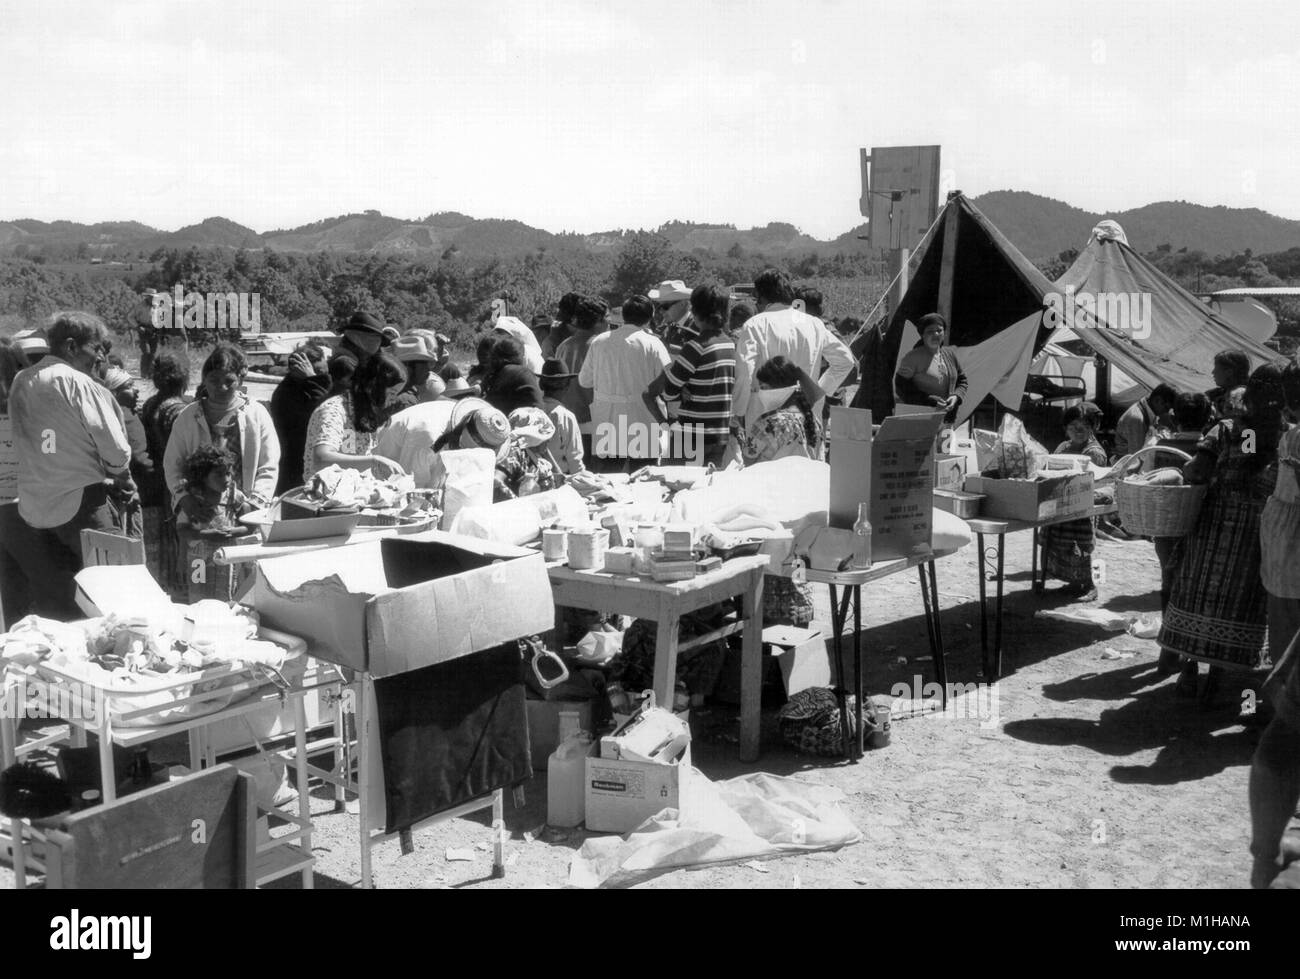 Foto, einen Outdoor Klinik abfüllen medizinische und Erste-Hilfe-Versorgung der Überlebenden des Erdbebens in Tecpan, Guatemala, nach einem verheerenden Erdbeben mit einer Magnitude von 7,5 auf der Richterskala, 1976. () Stockfoto